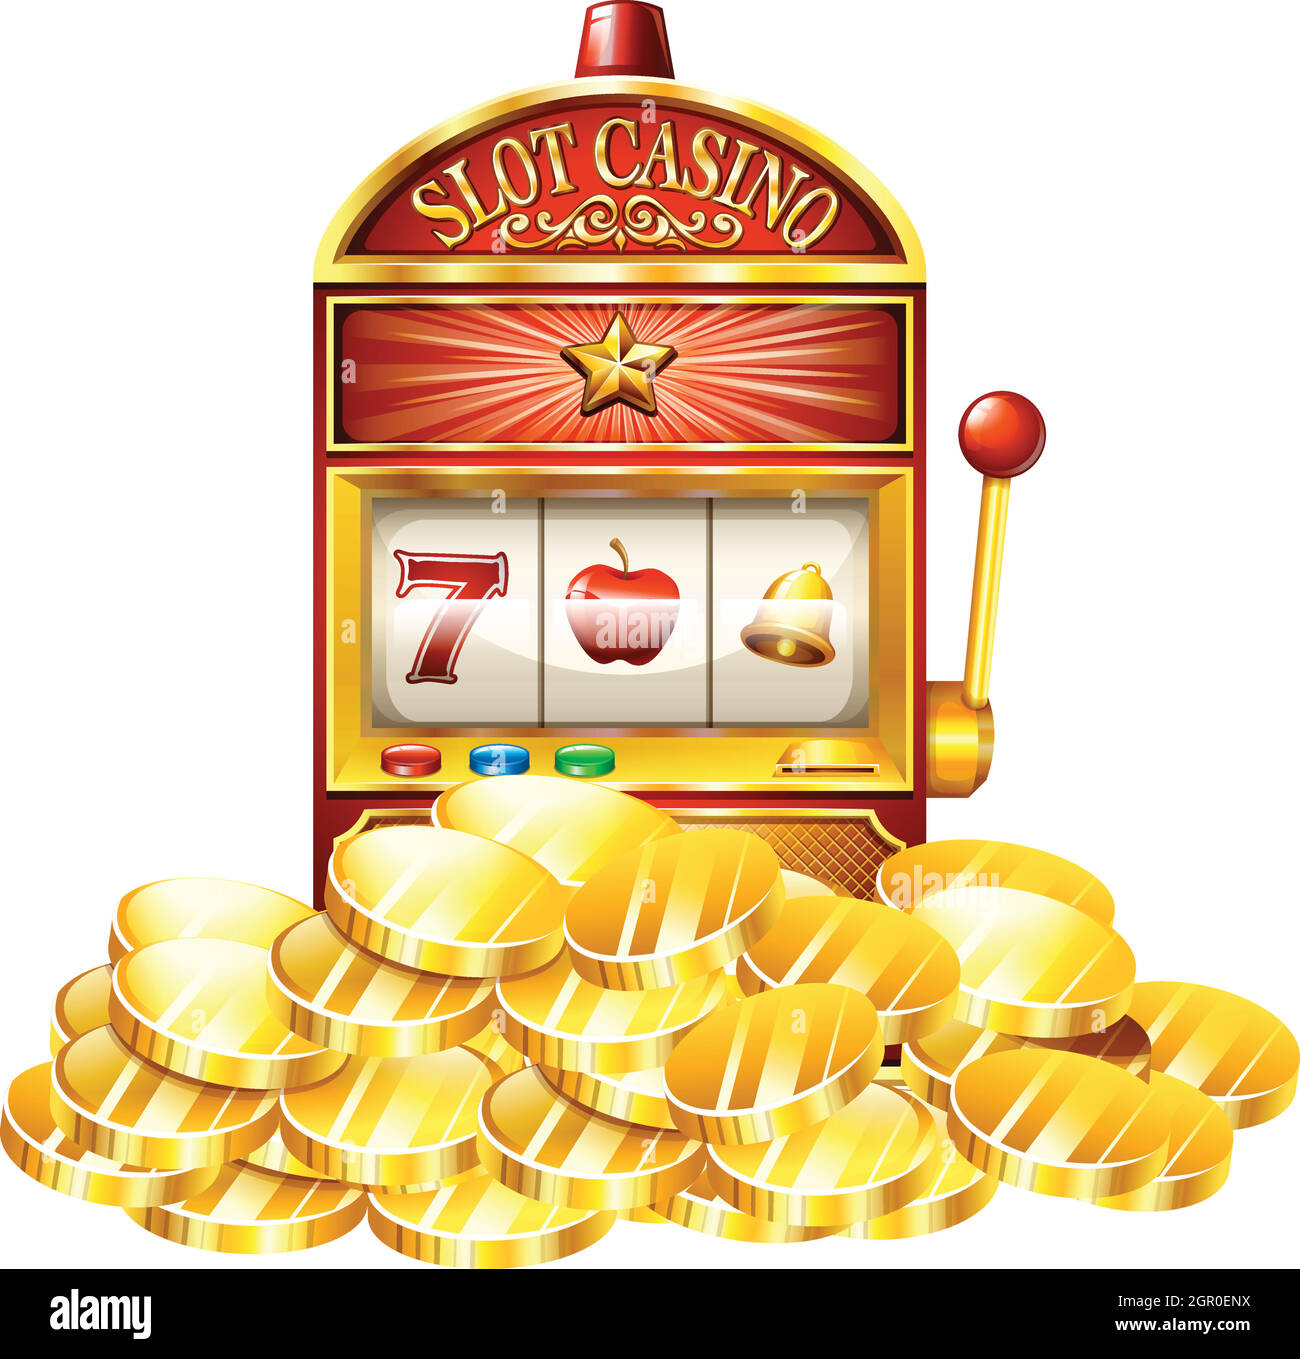 Slot machine with golden tokens Stock Vector